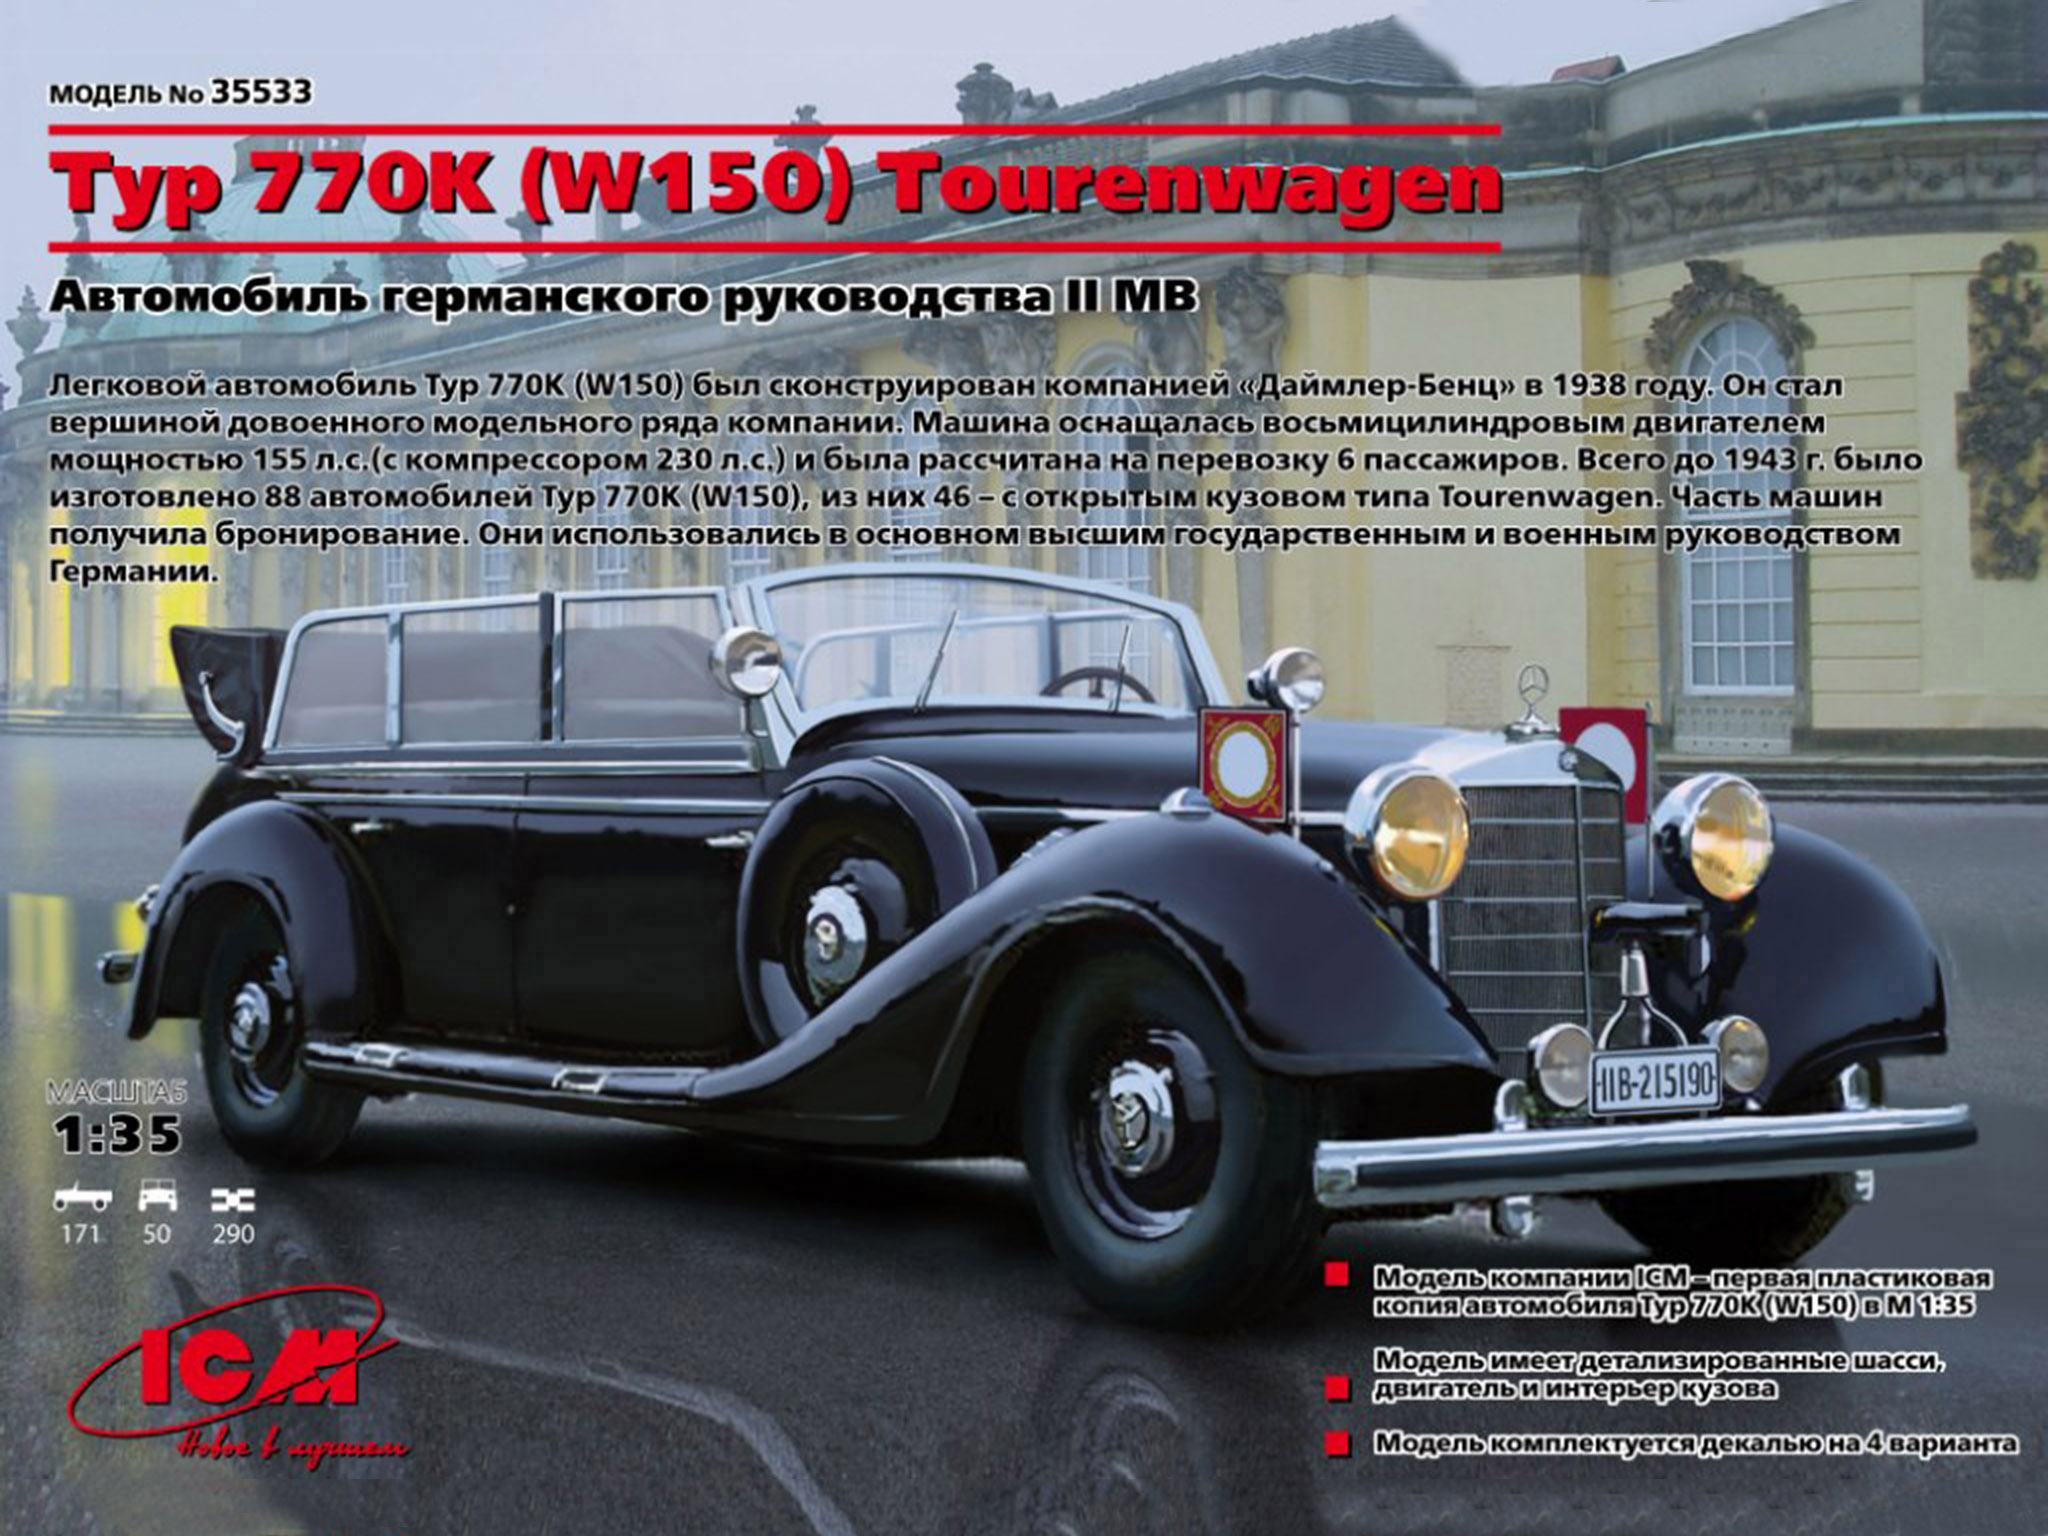 35533 ICM 1/35 Автомобиль германского руководства времен 2МВ тип 770K (W150) Tourenwagen